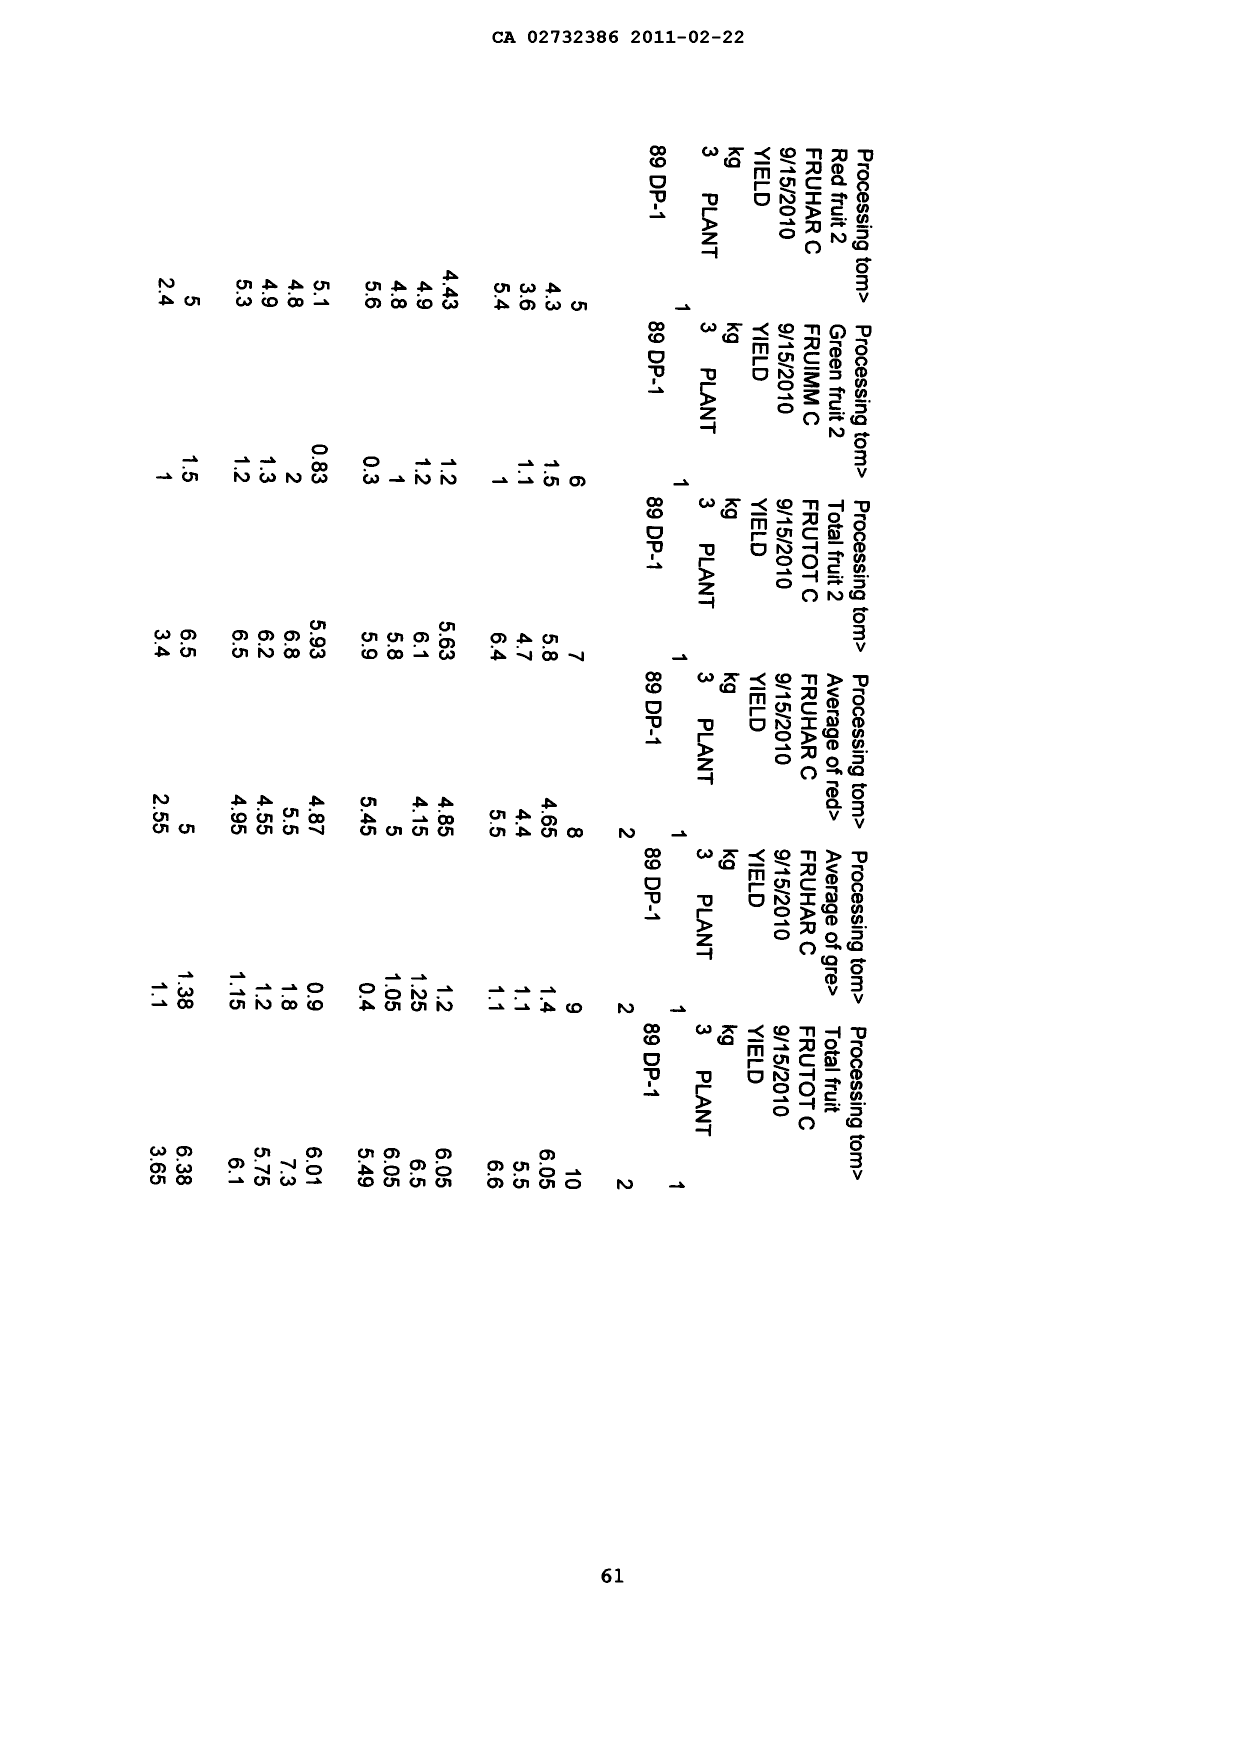 Canadian Patent Document 2732386. Description 20101222. Image 61 of 62